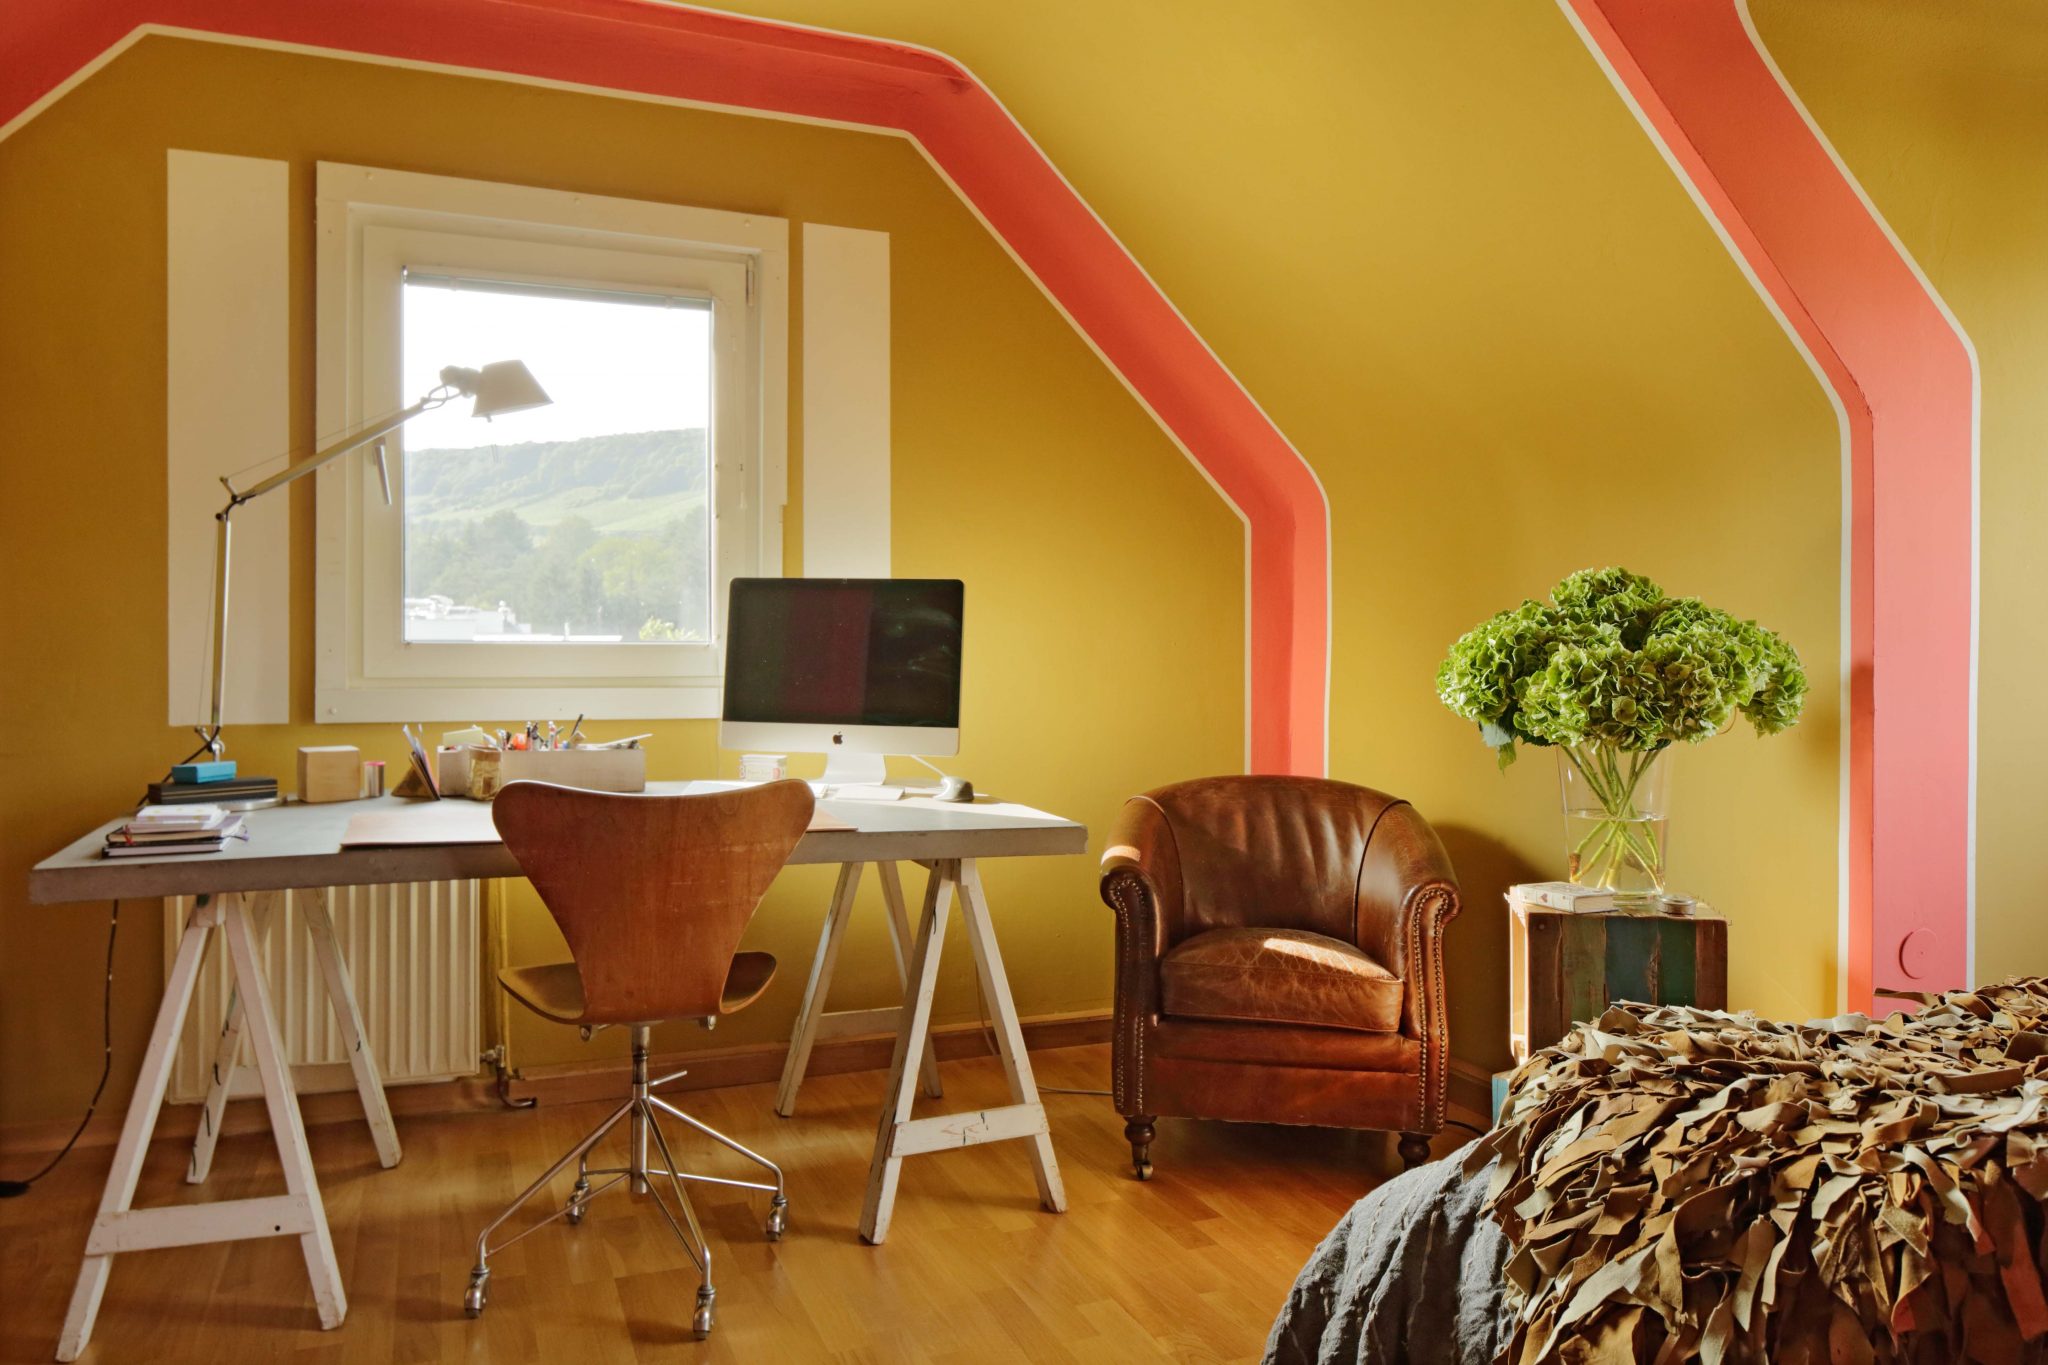 Durch Farbgestaltung in Bananengelb und Orange hervorgehobe Dachschrägen mit schlicht-elegantem Interior, Ledersessel, Schreibtisch und Bett.